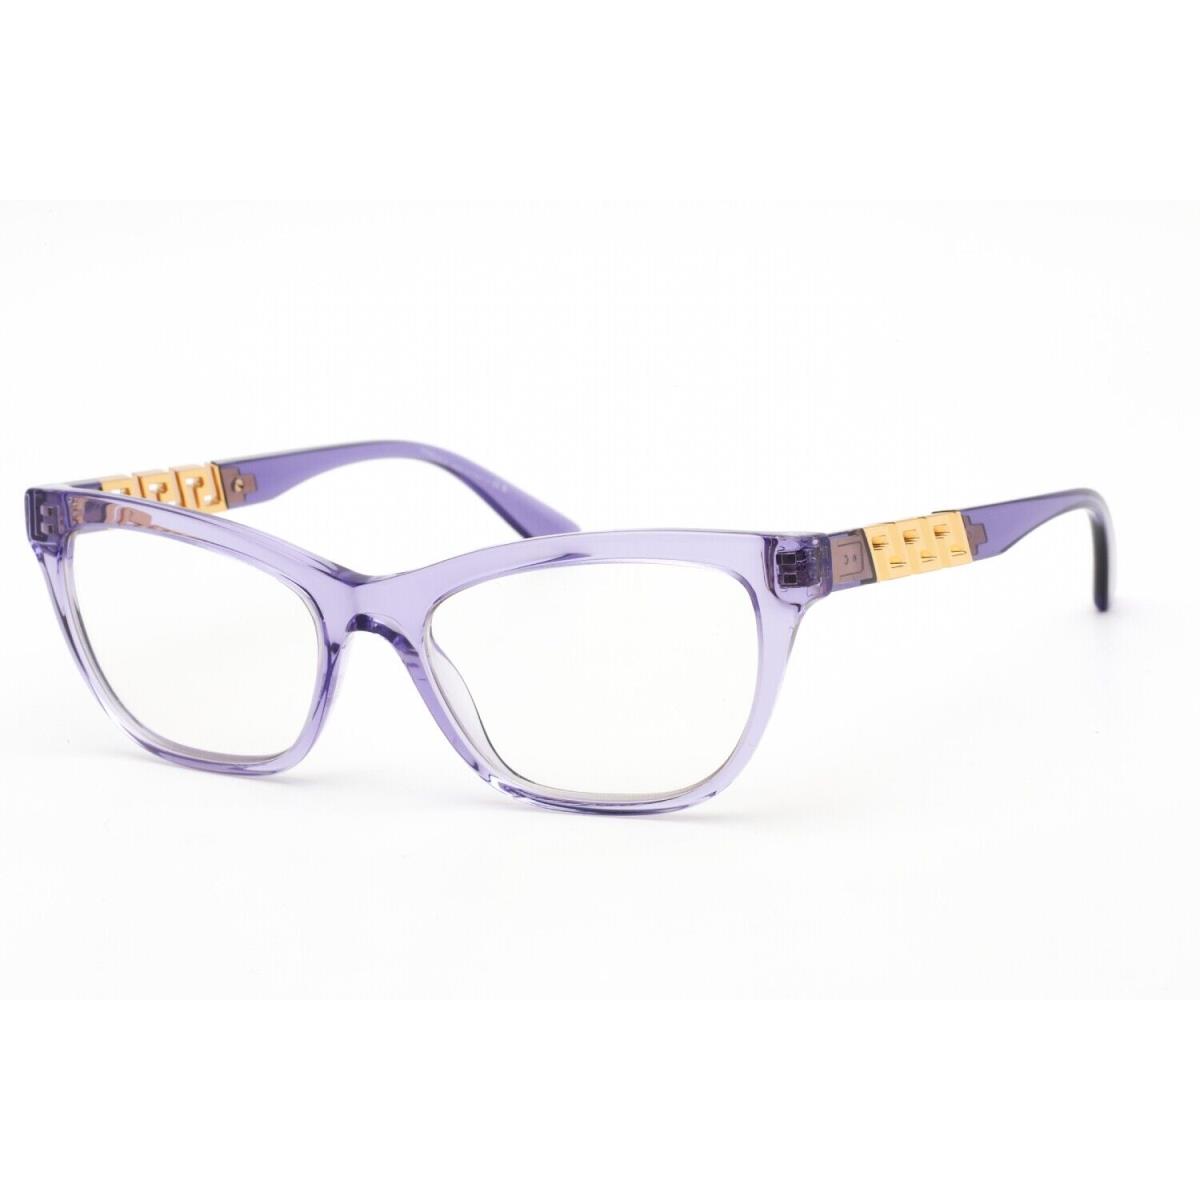 Versace 0VE3318 5353 Eyeglasses Transparent Violet Frame 52 Mm